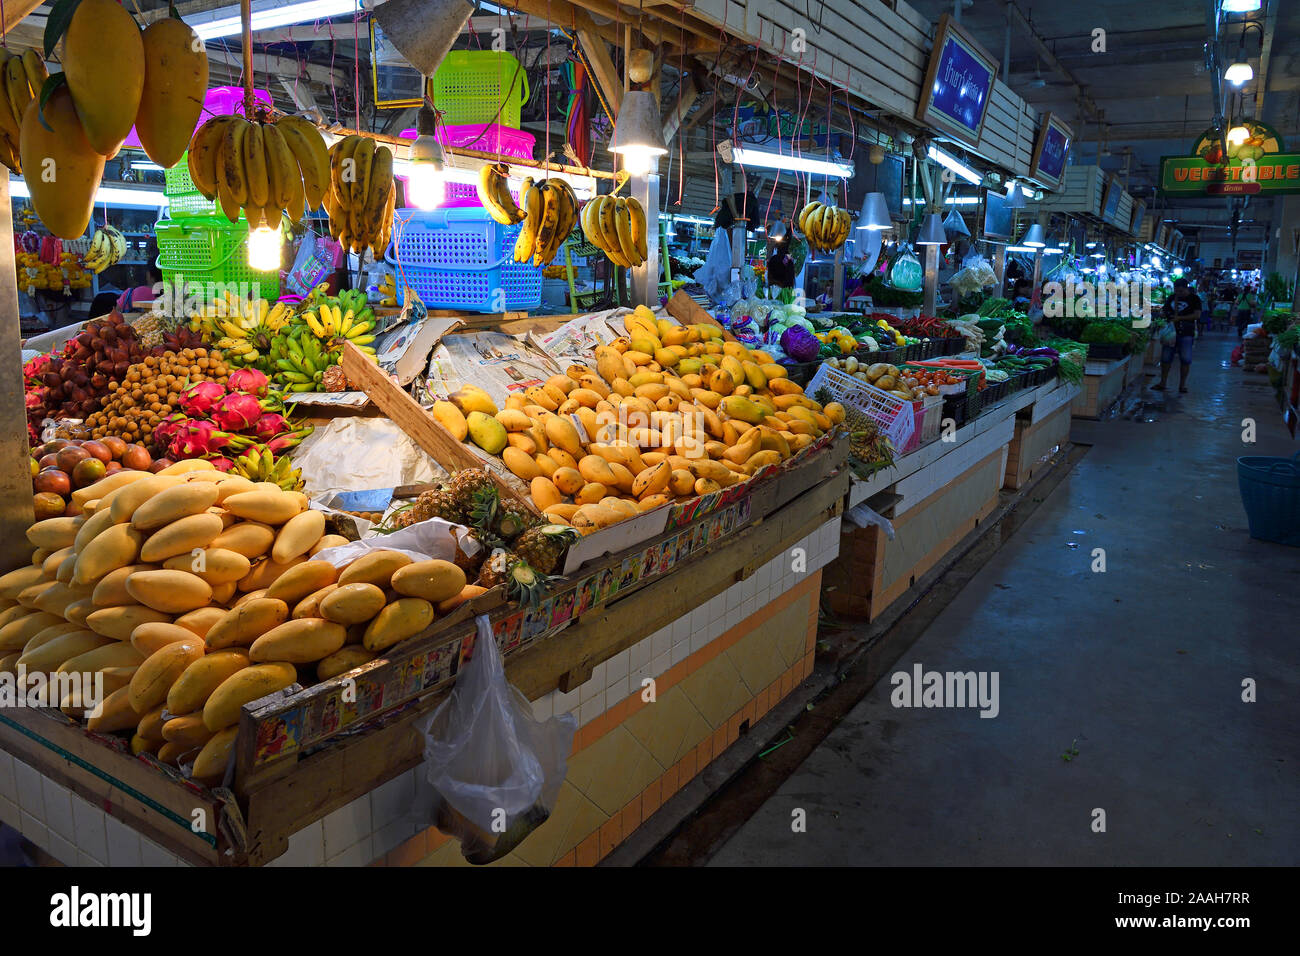 typische Stände mit riesiger Auswahl an frischem Obst und Gemüse auf dem Banzaan fresh market, Patong Beach, Phuket, Thailand Stock Photo